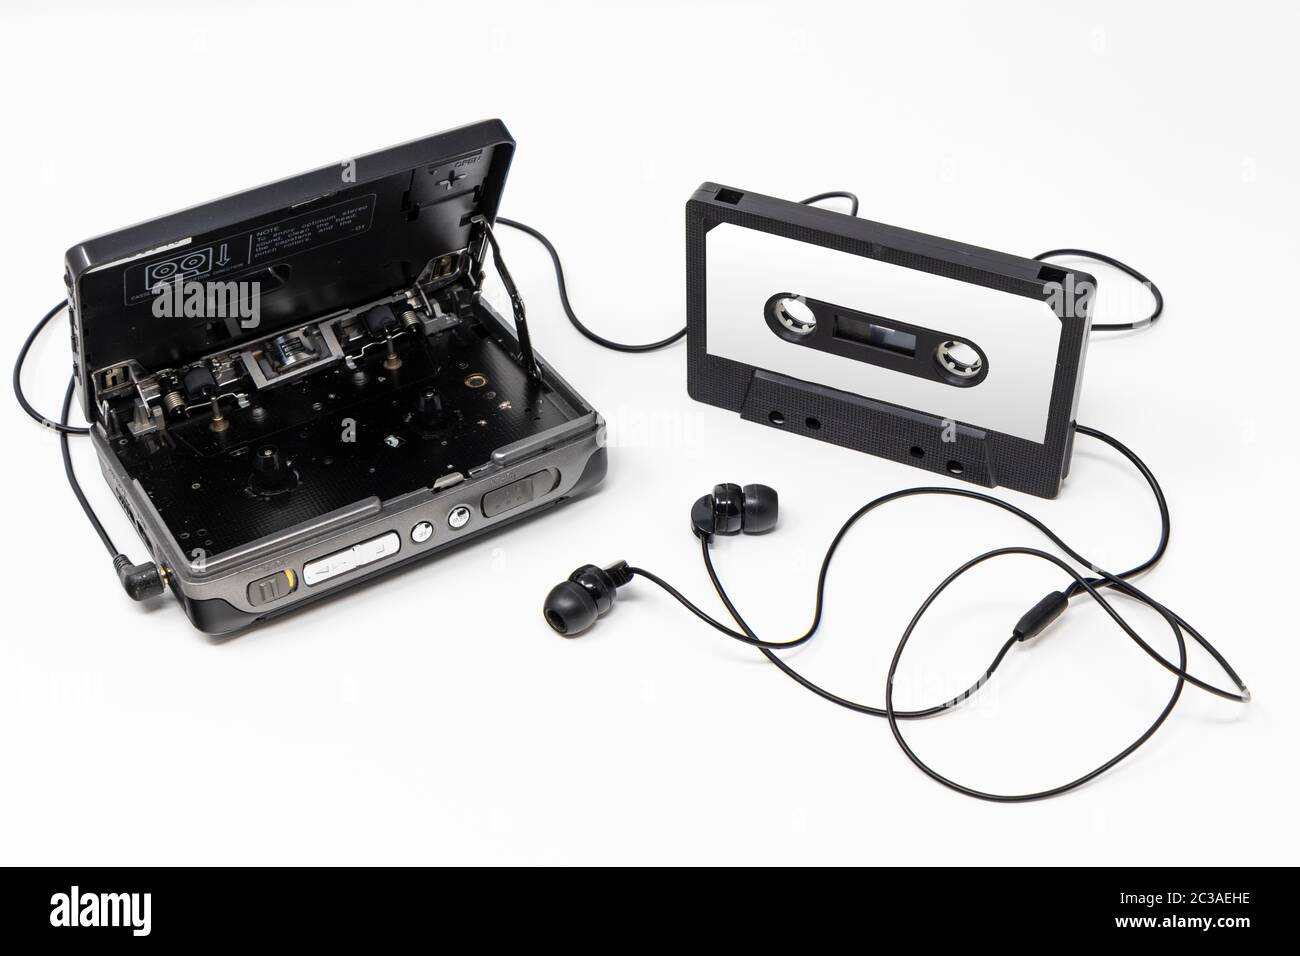 lecteur-audio-vintage-lecteur-de-cassettes-portable-a-l-ancienne-objet-culte-icone-et-symbole-des-annees-80-et-90-isolation-de-la-bande-audio-et-des-ecouteurs-vierges-2c3aehe.jpg